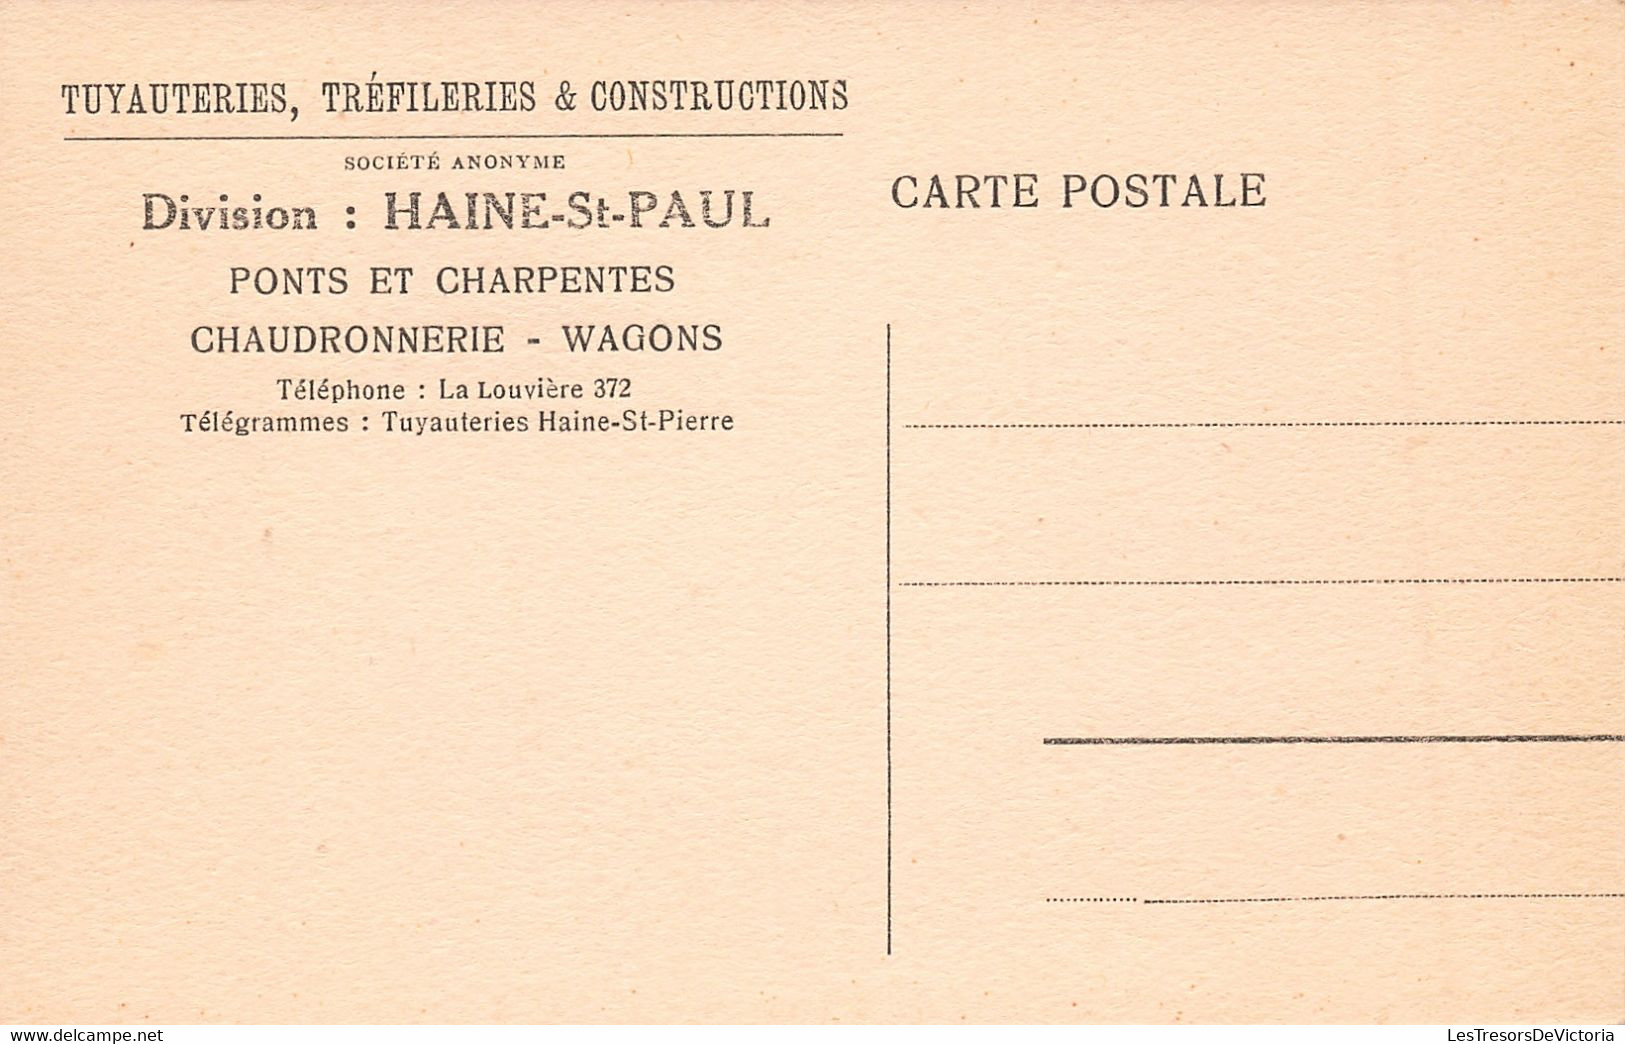 Belgique - Haine saint paul - Tuyauteries tréfileries et constructions - lot de 8 cartes - Carte postale ancienne